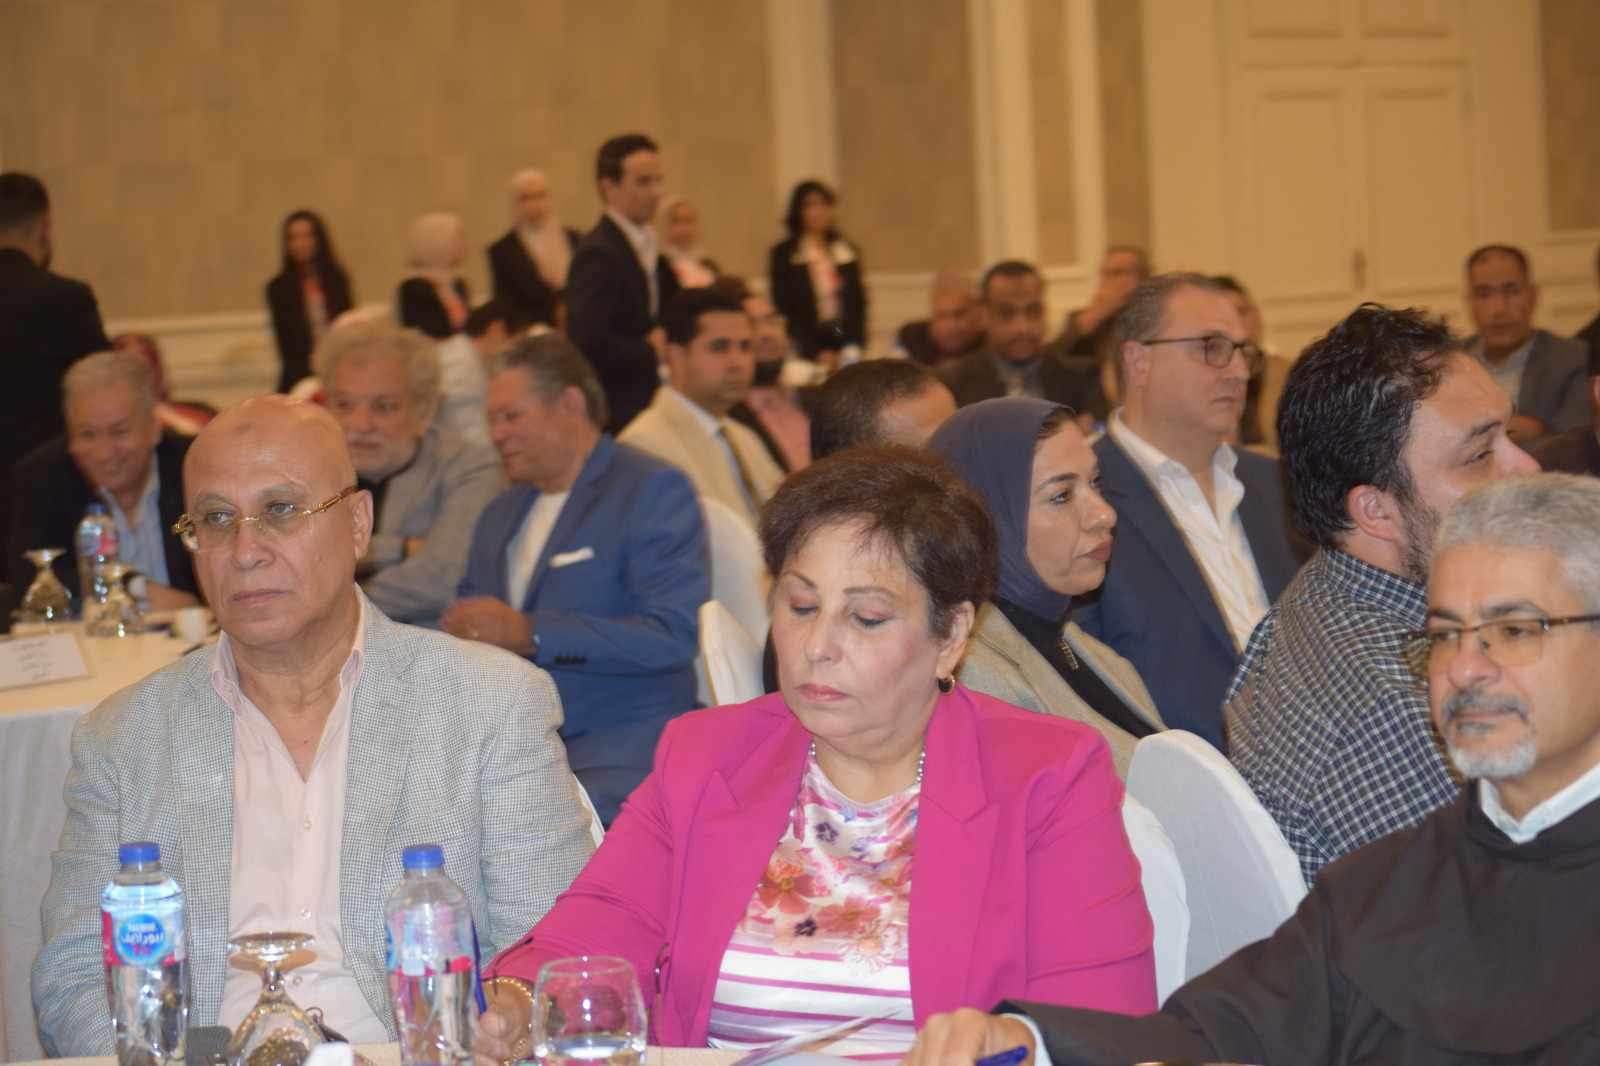 مؤتمر الإنتاج الإعلامي وقضايا المجتمع العربي (2)